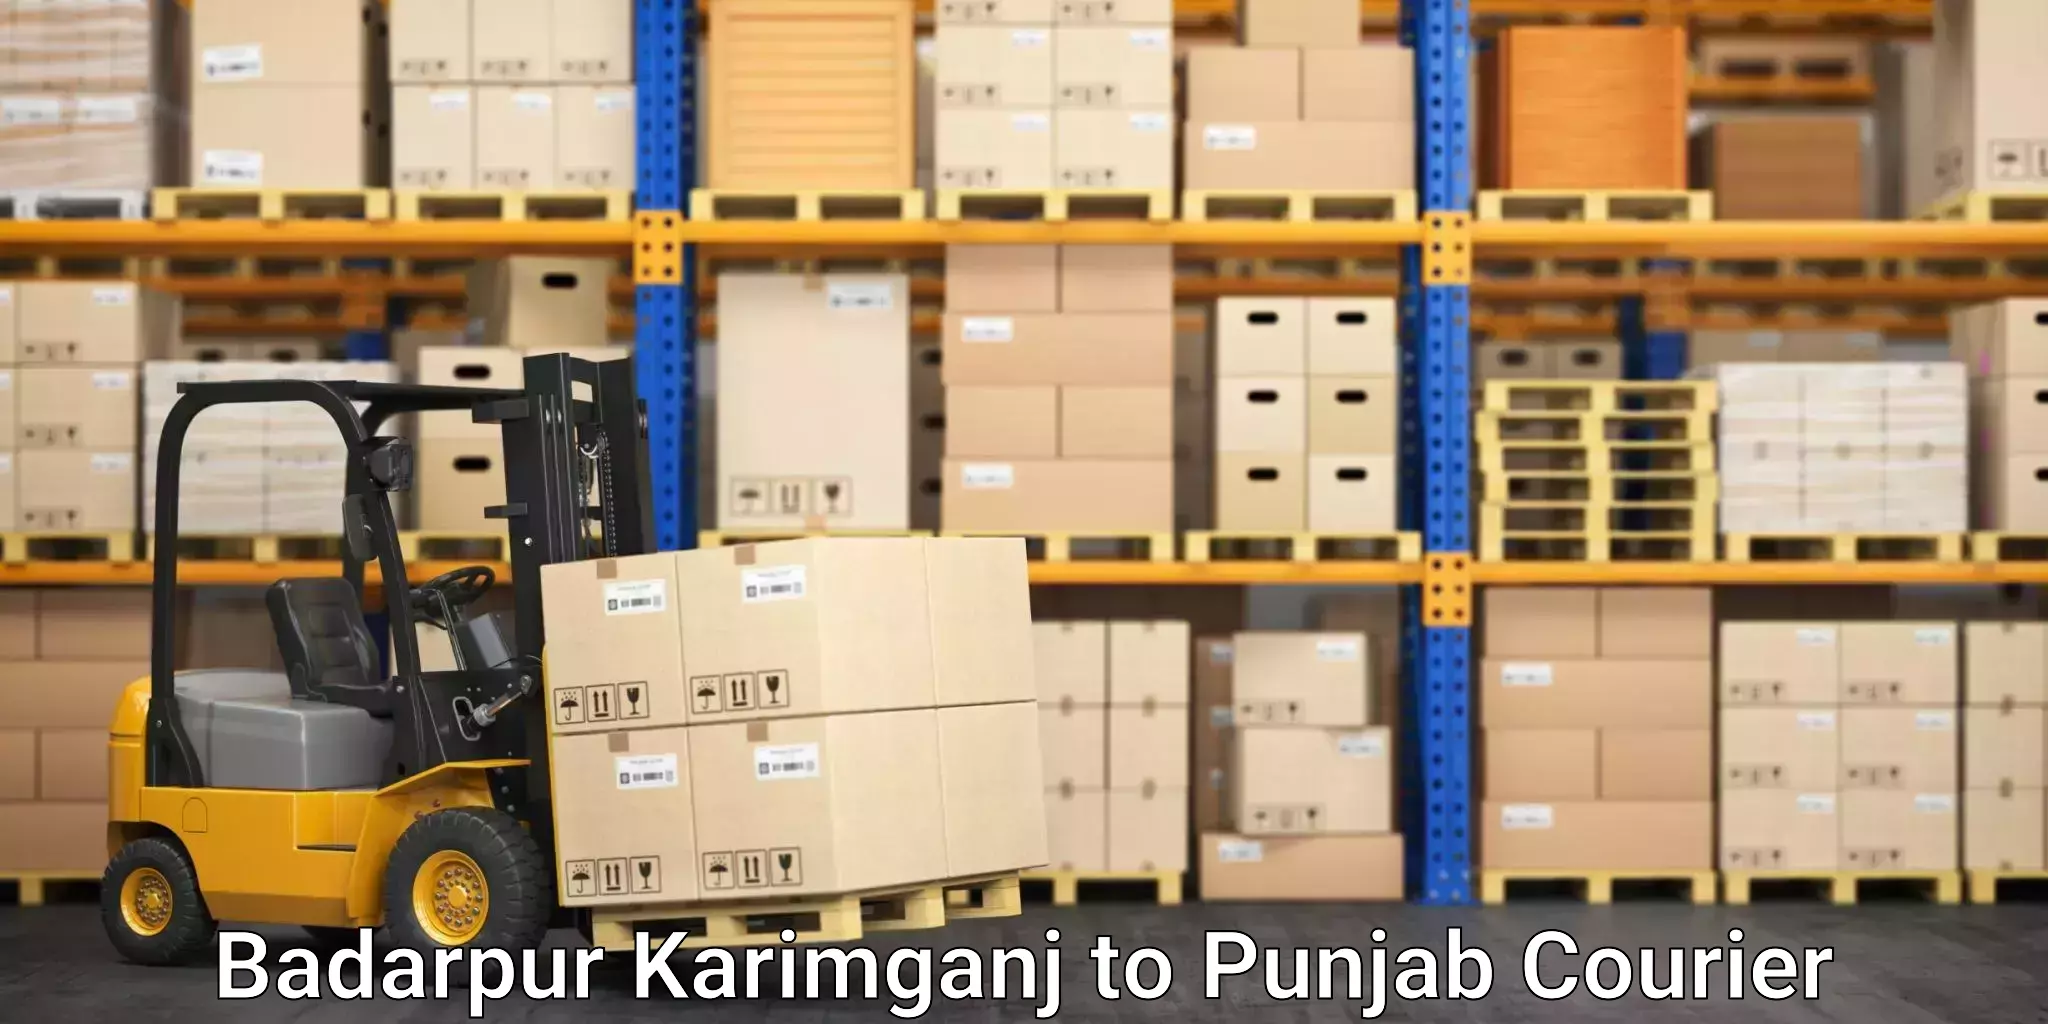 Logistics service provider Badarpur Karimganj to Sunam